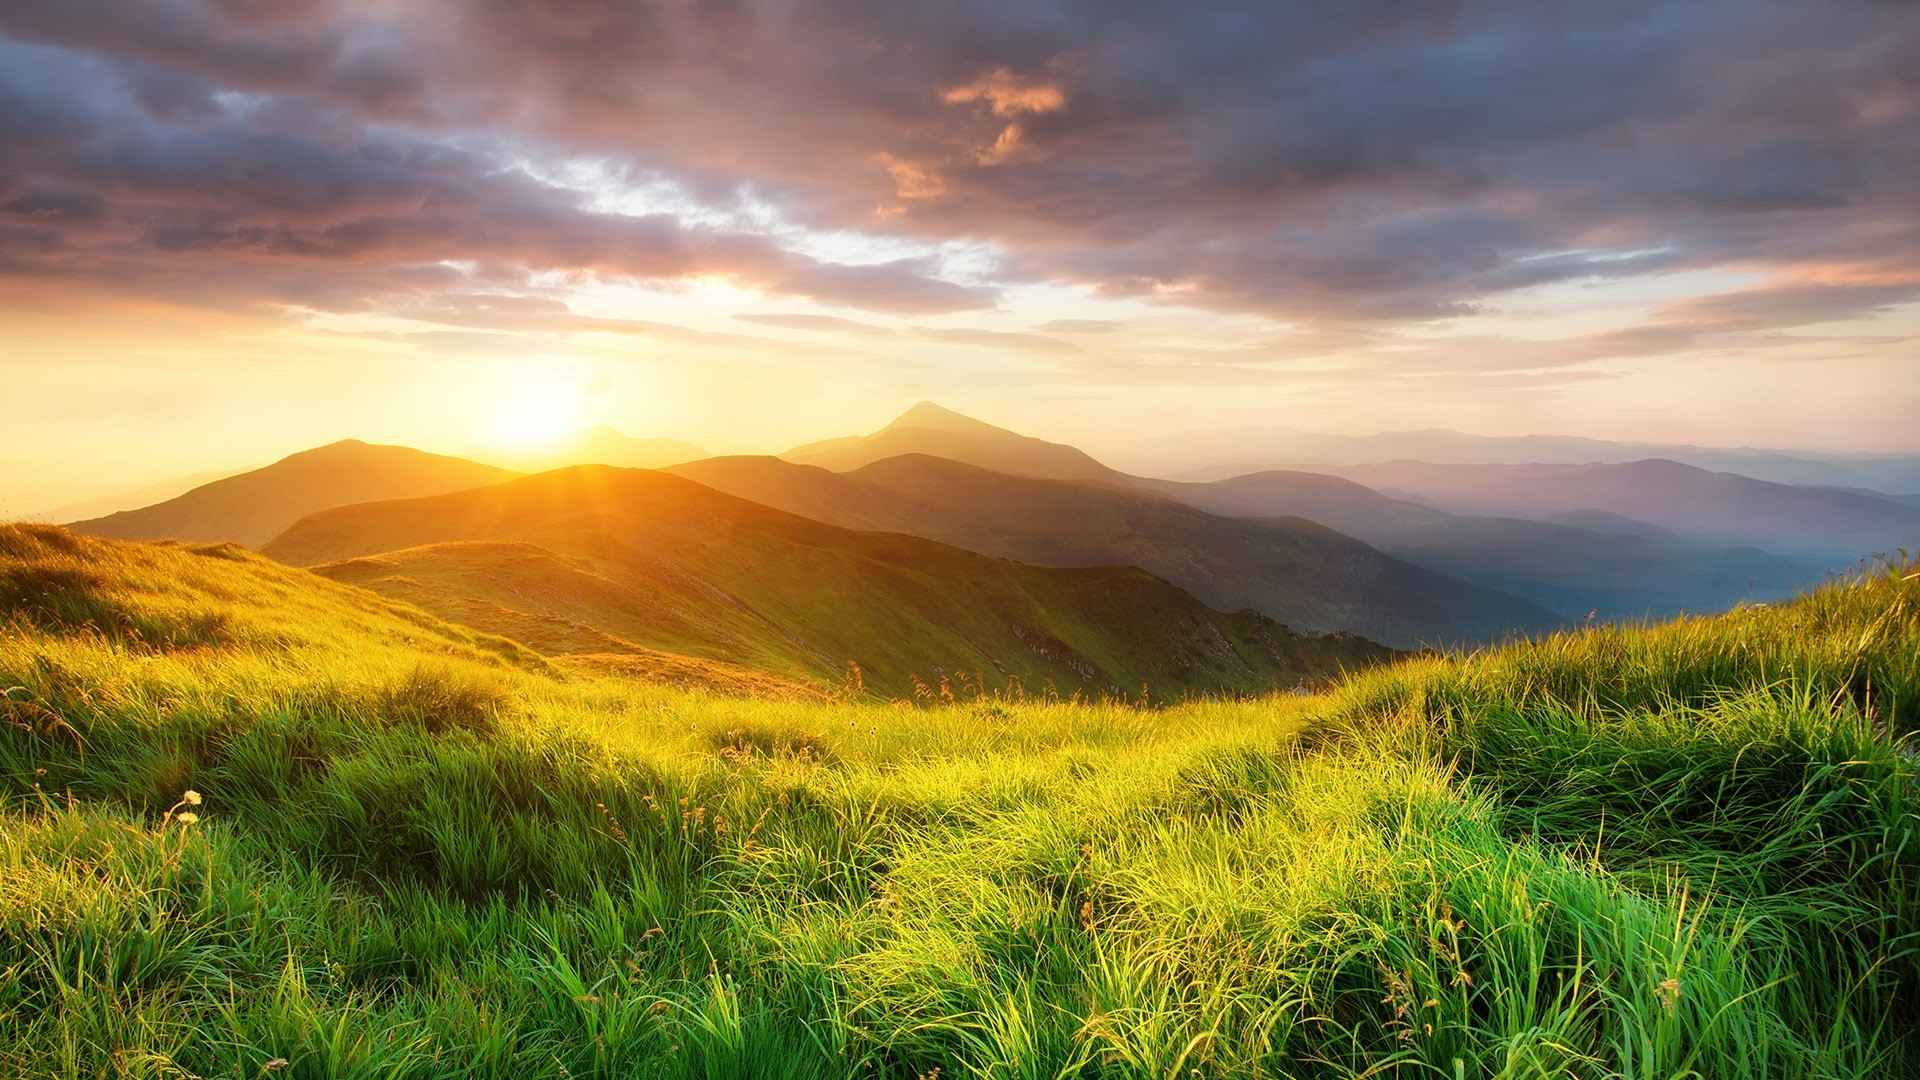 夕阳照在满是绿草的山脉唯美风景壁纸-